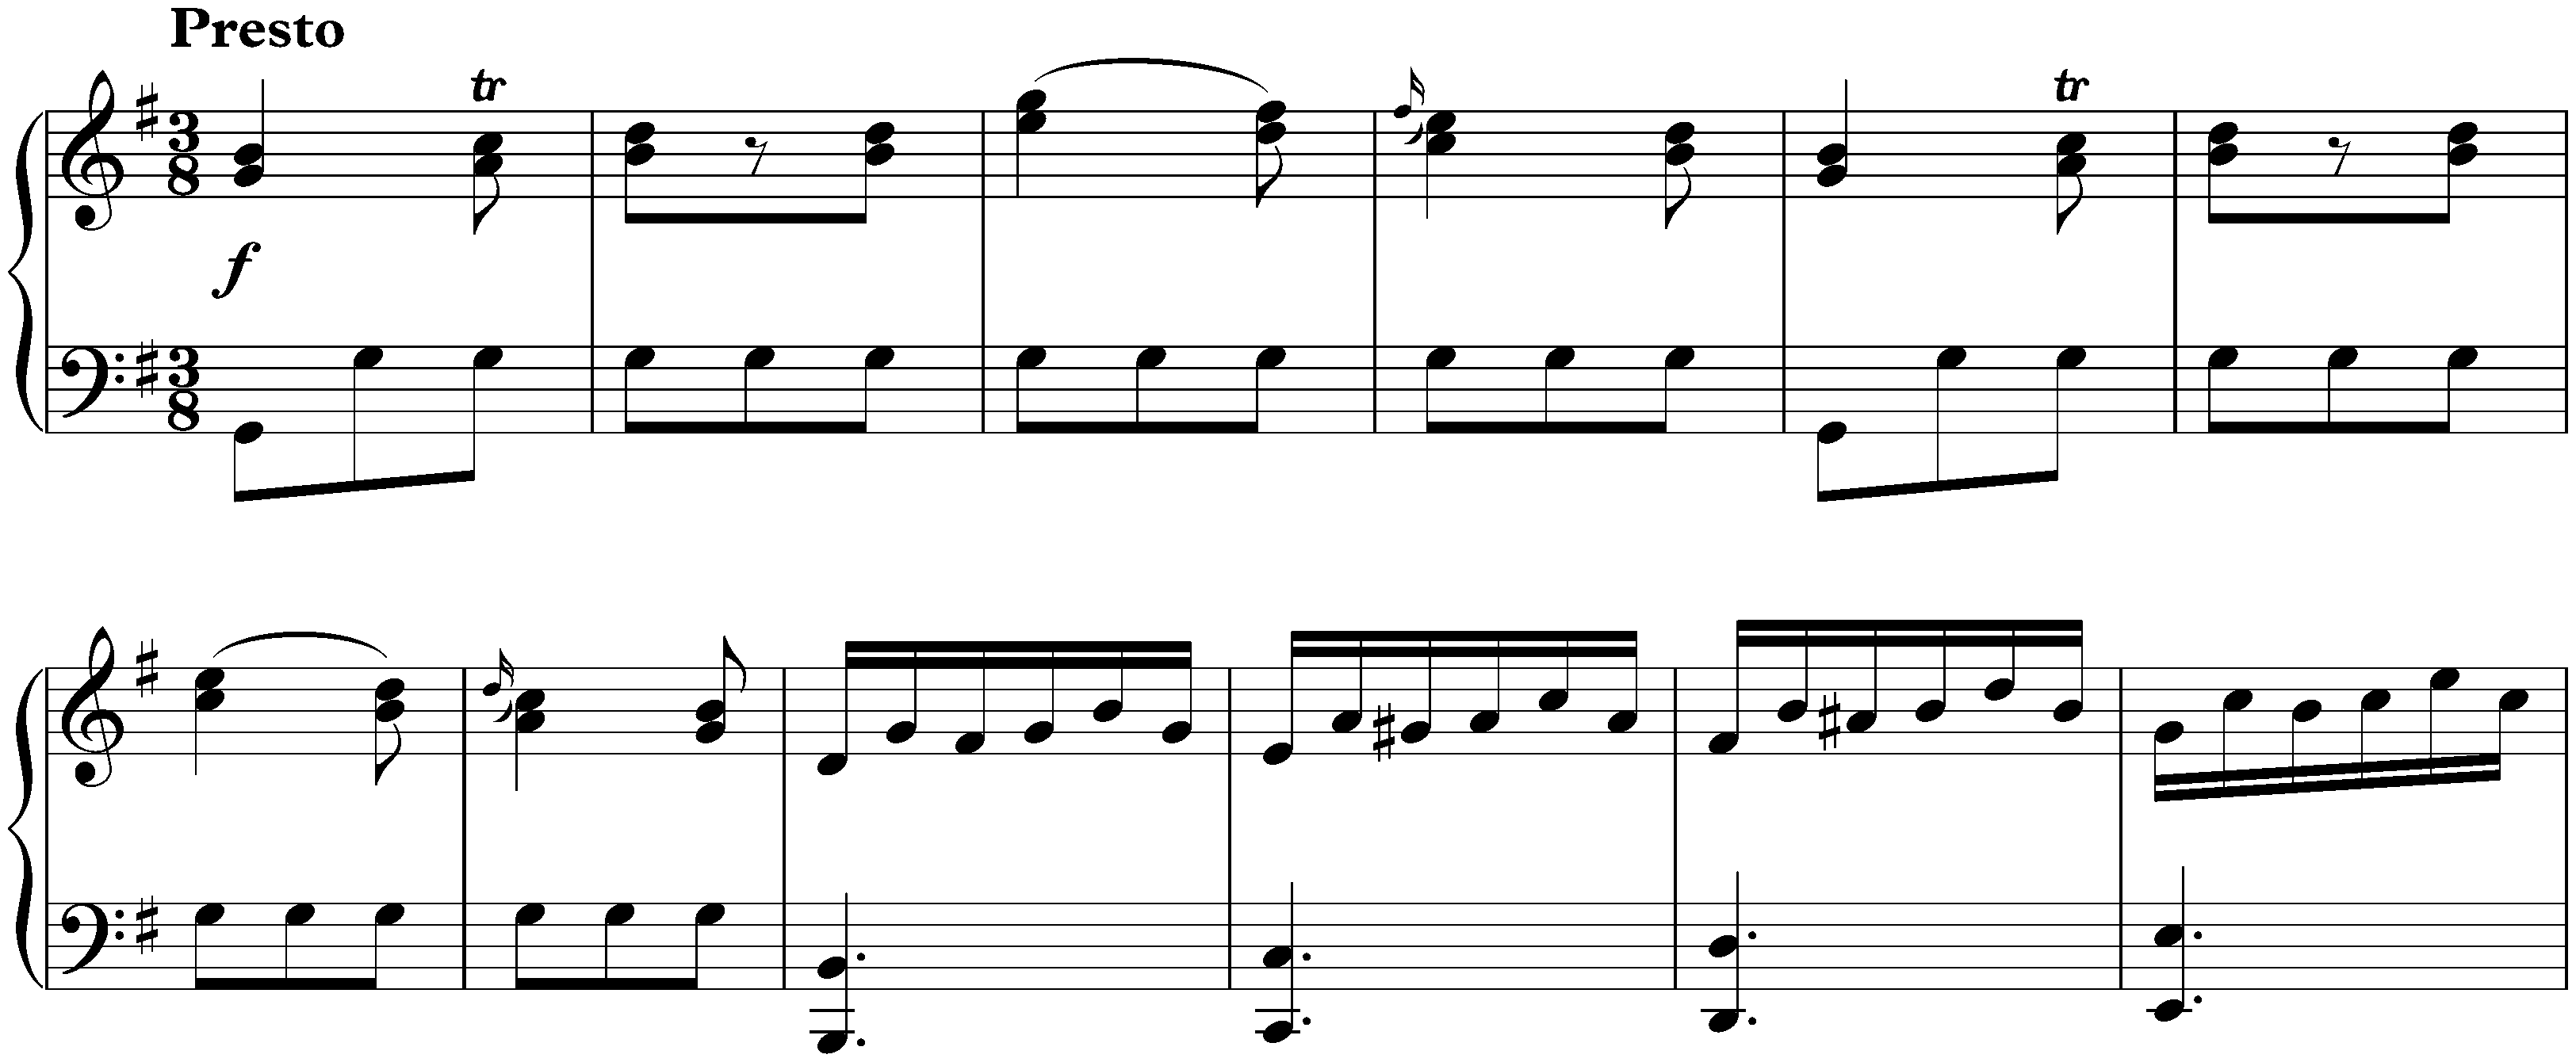 Sonata in G major, KV 283/189h; 3. Presto